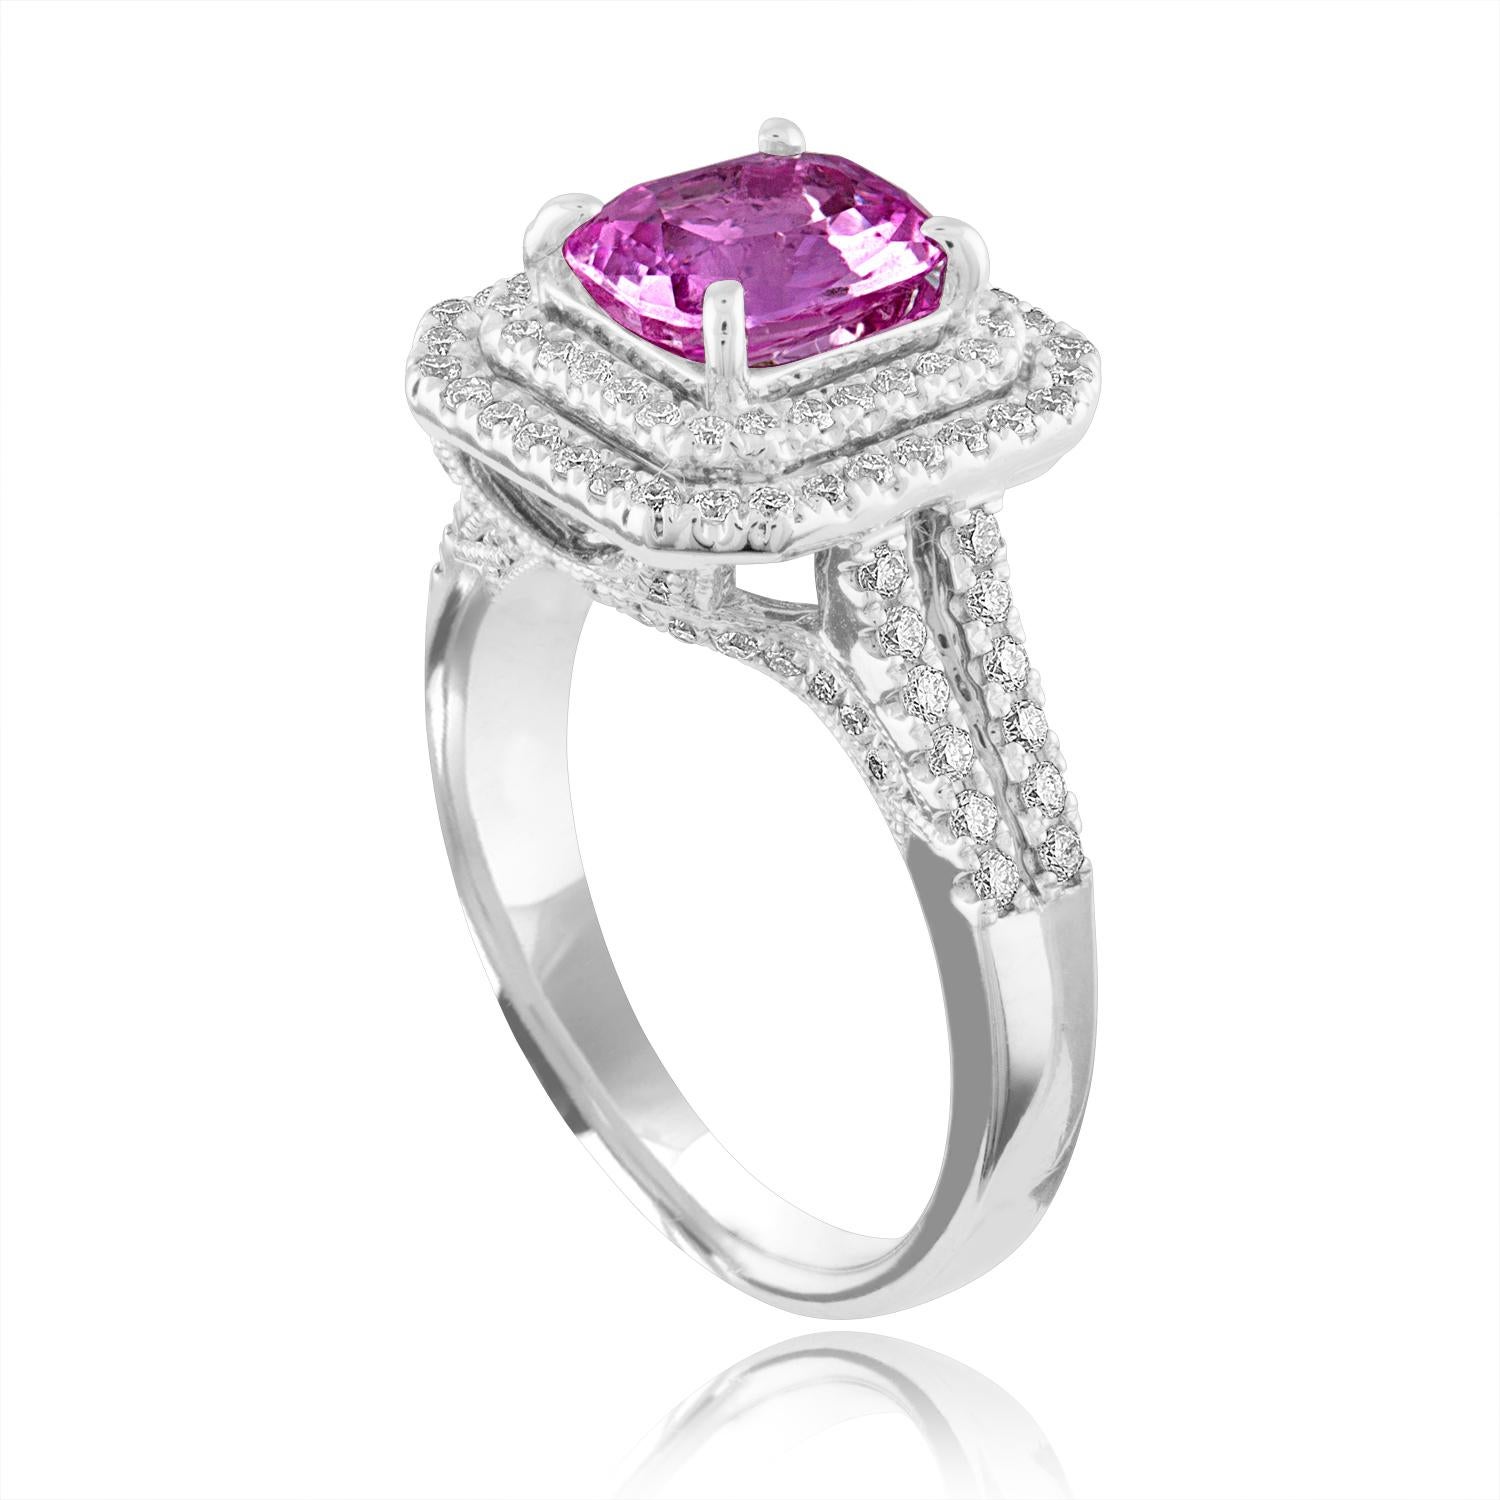 Exquisiter Saphir umgeben von einem doppelten Diamant-Halo
Der Ring ist aus 18K Weißgold
Der Saphir im Kissenschliff ist rosa 1,90 Karat
Der Sapphire ist erhitzt
Es sind 0,74 Karat in Diamanten F/G VS/SI
Der Ring ist eine Größe 6,50, sizable.
Der